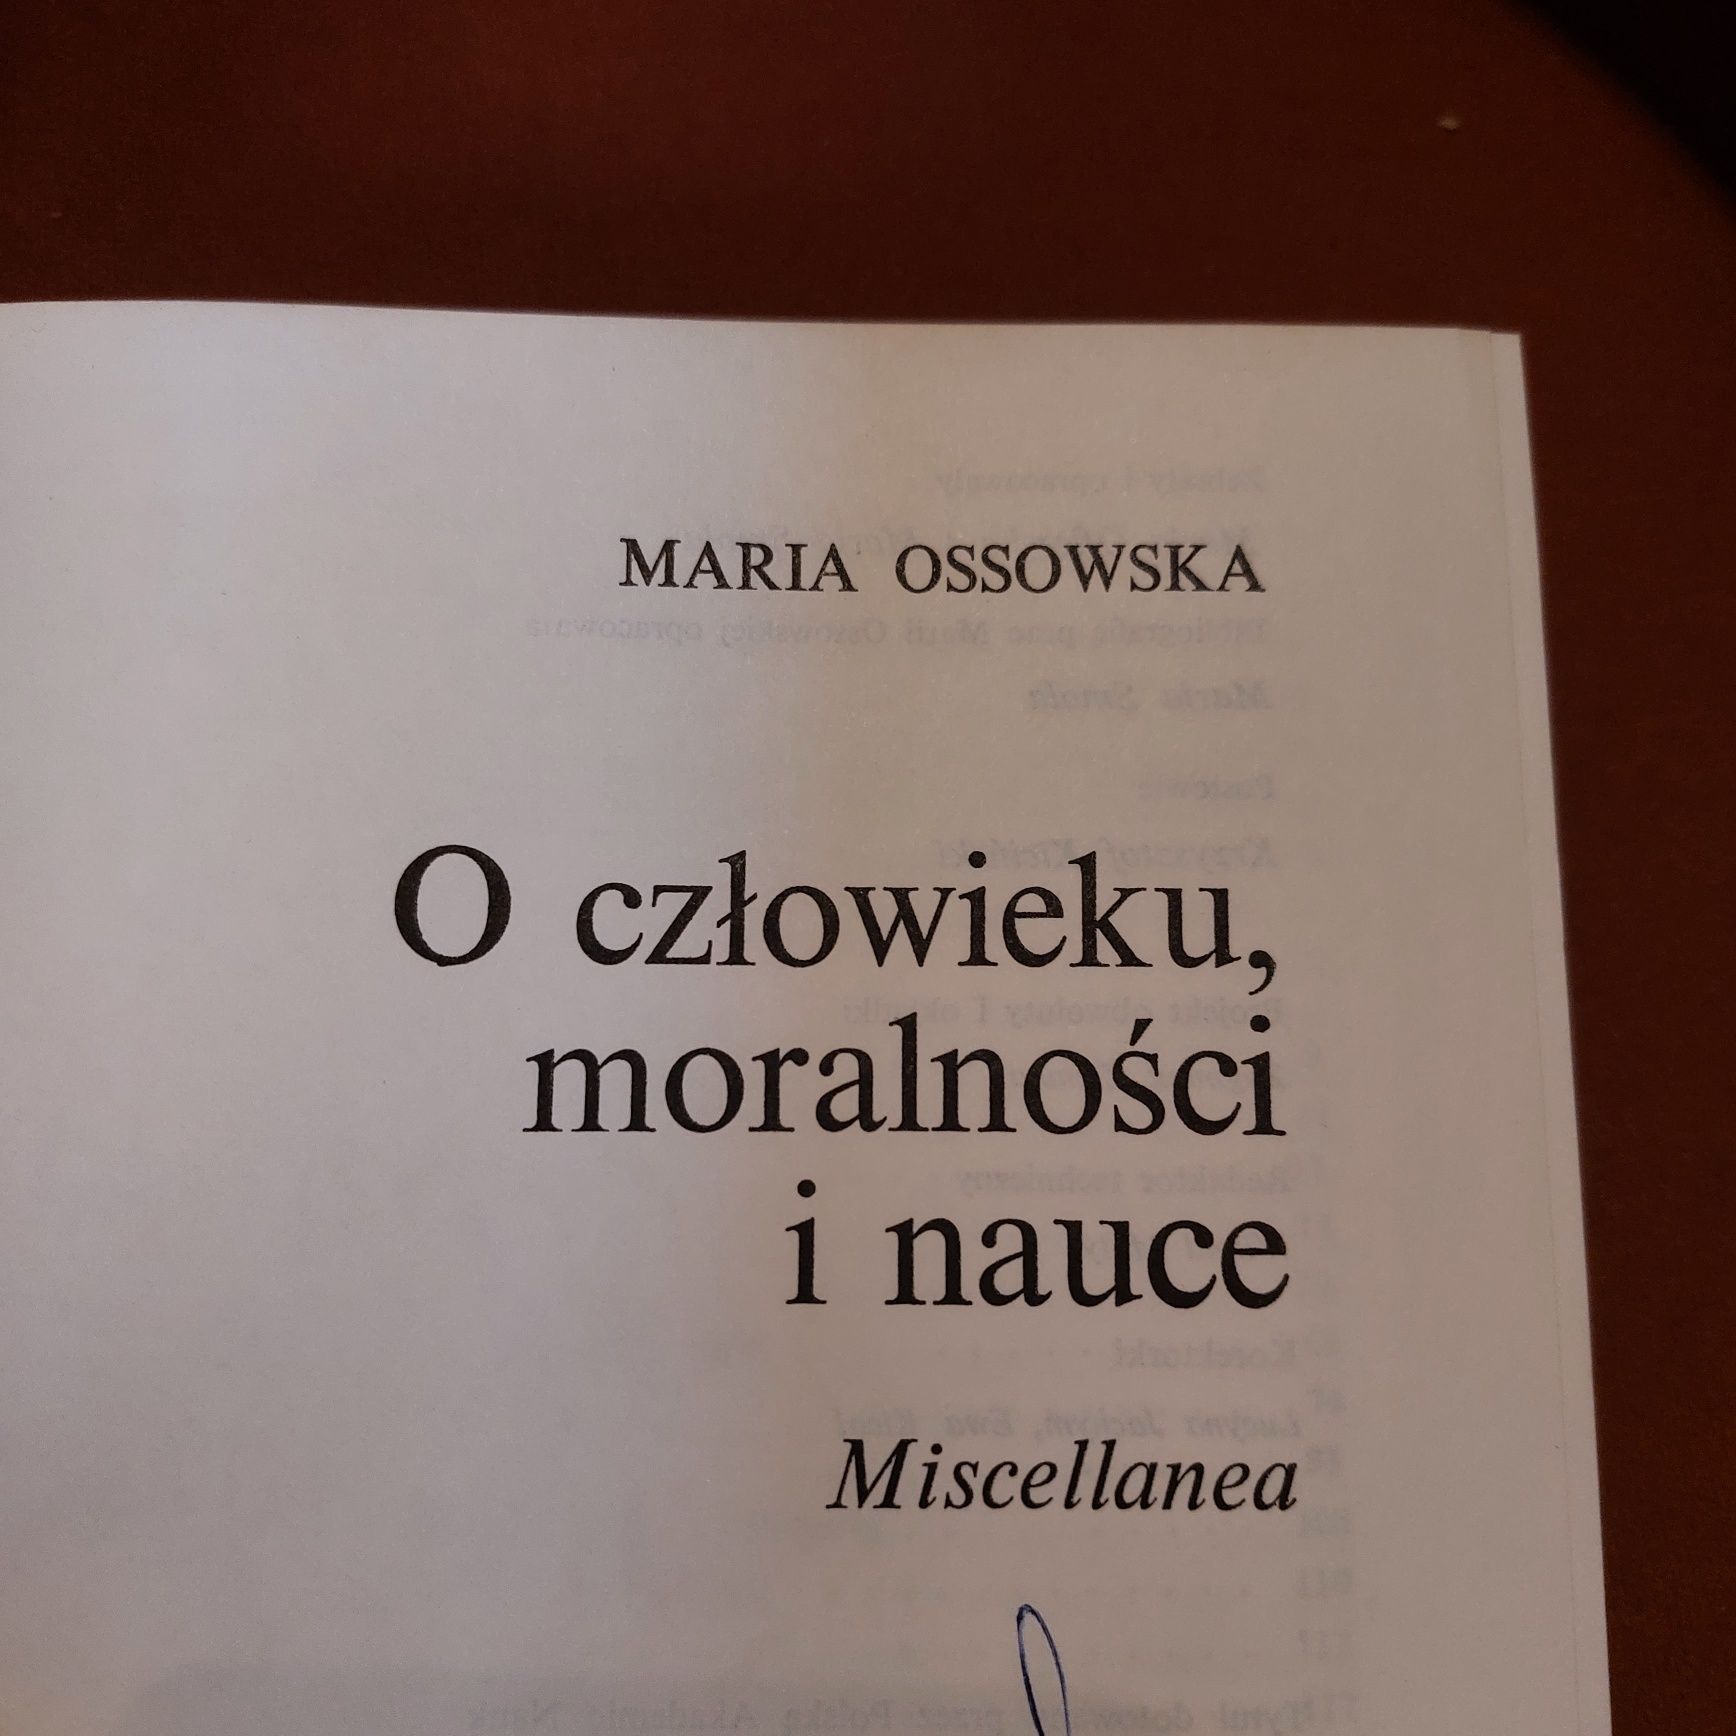 Maria Ossowska o człowieku, moralności i nauce miscellanea 1983